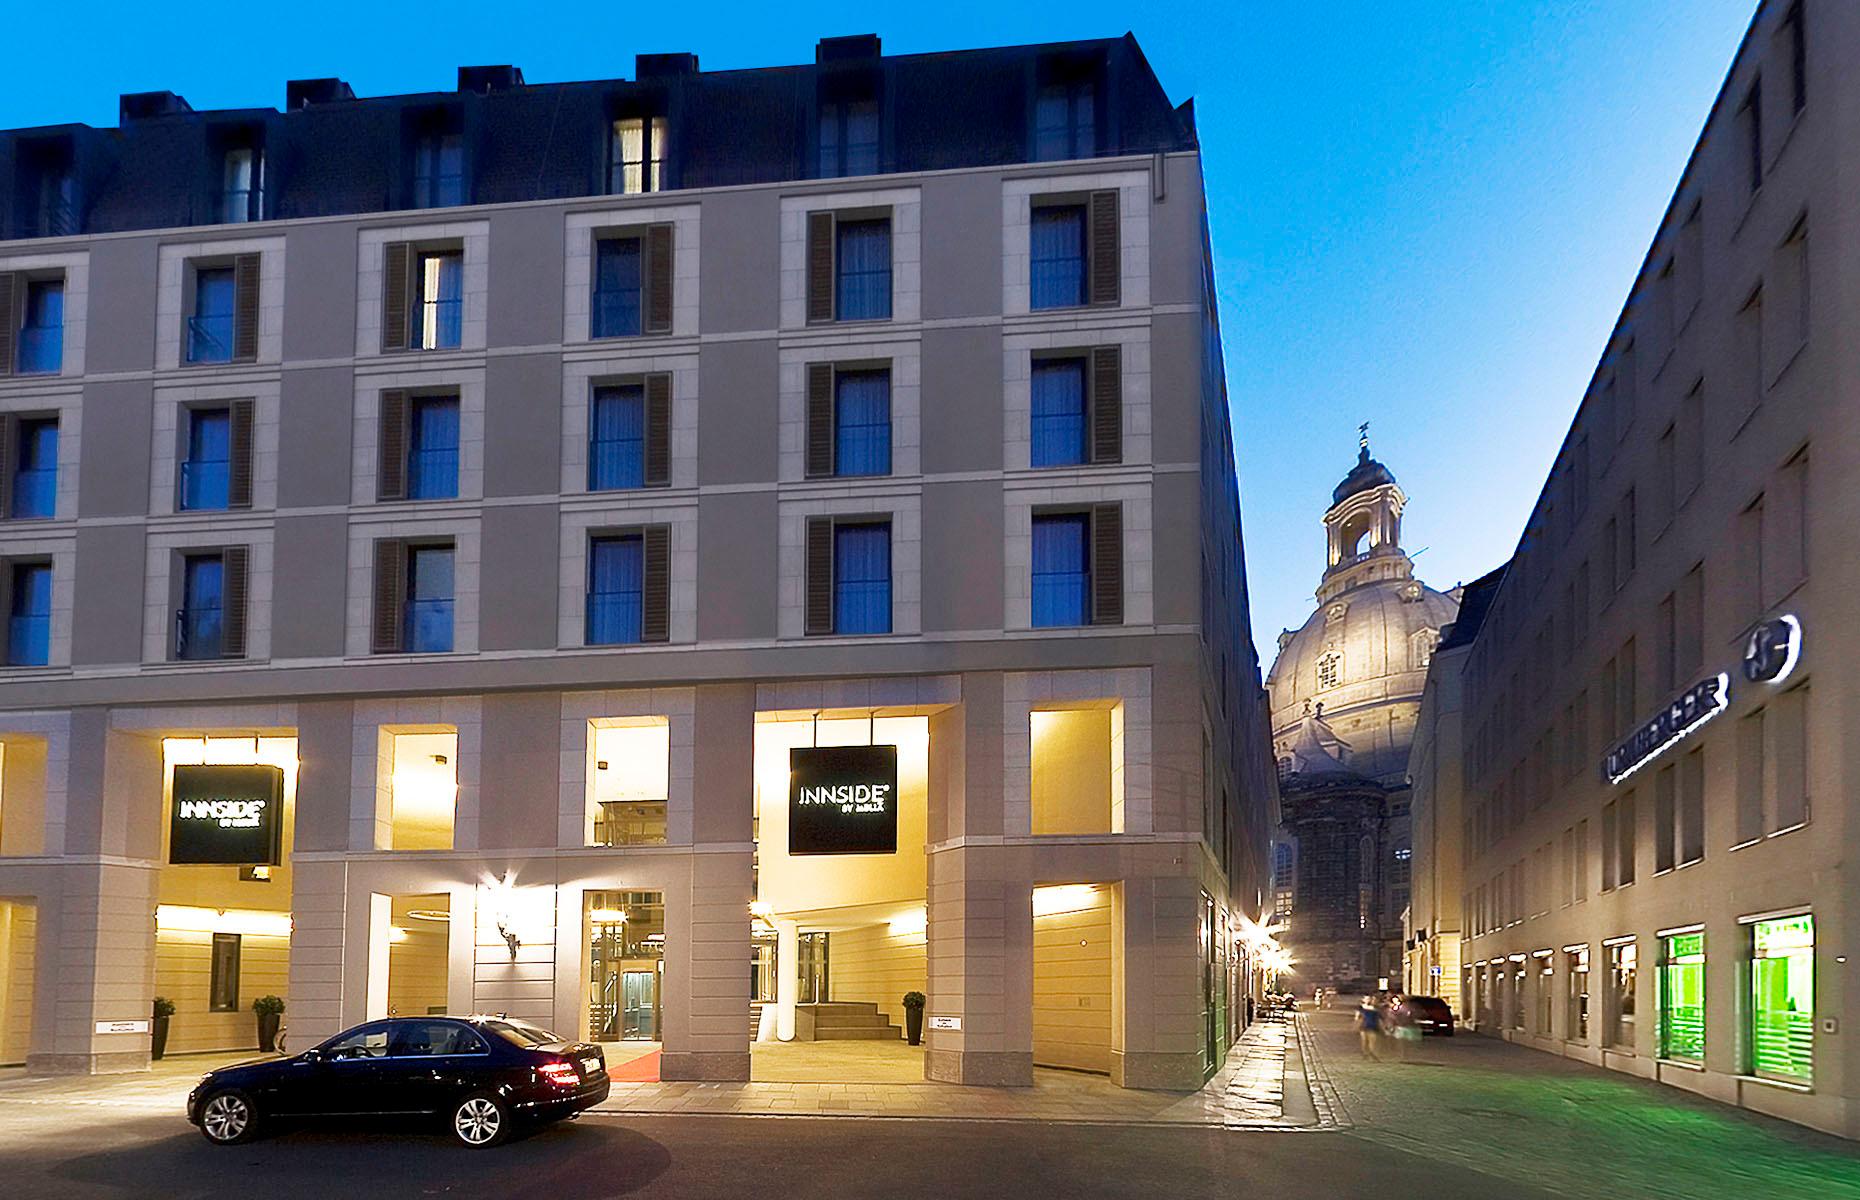 Das stylische Innside Hotel in Dresdens Altstadt:
